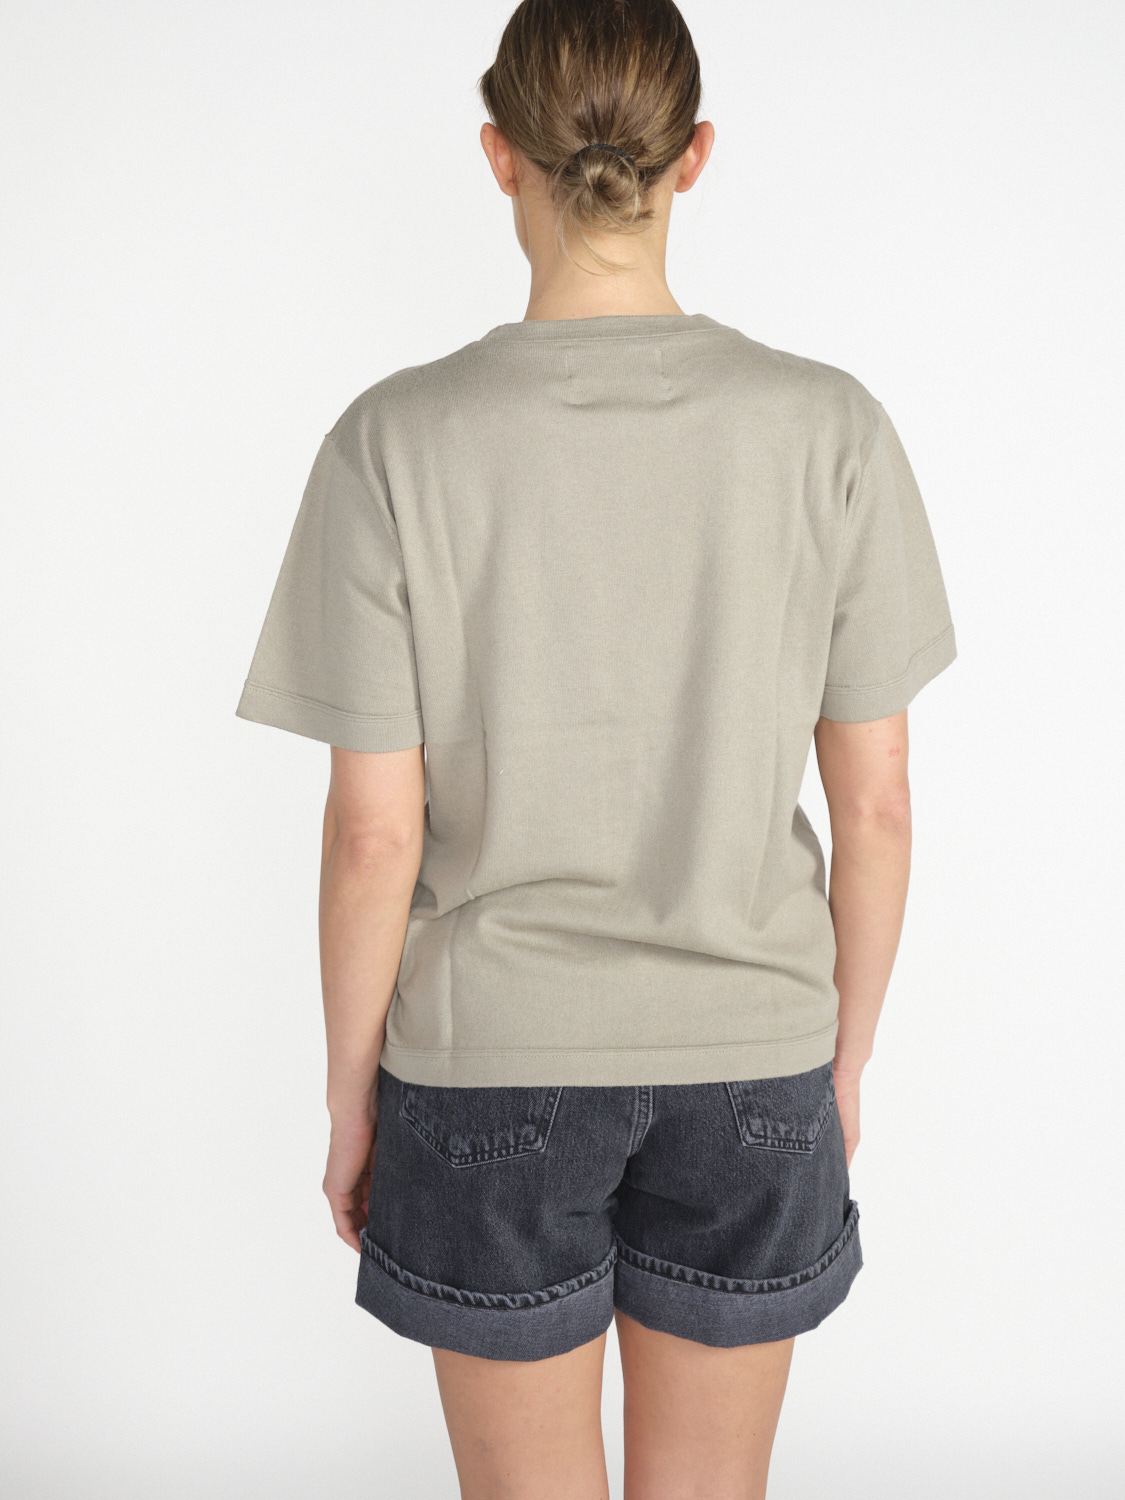 Extreme Cashmere n° 268 Cuba - T-shirt ampia in misto cashmere e cotone hellgrün Taglia unica